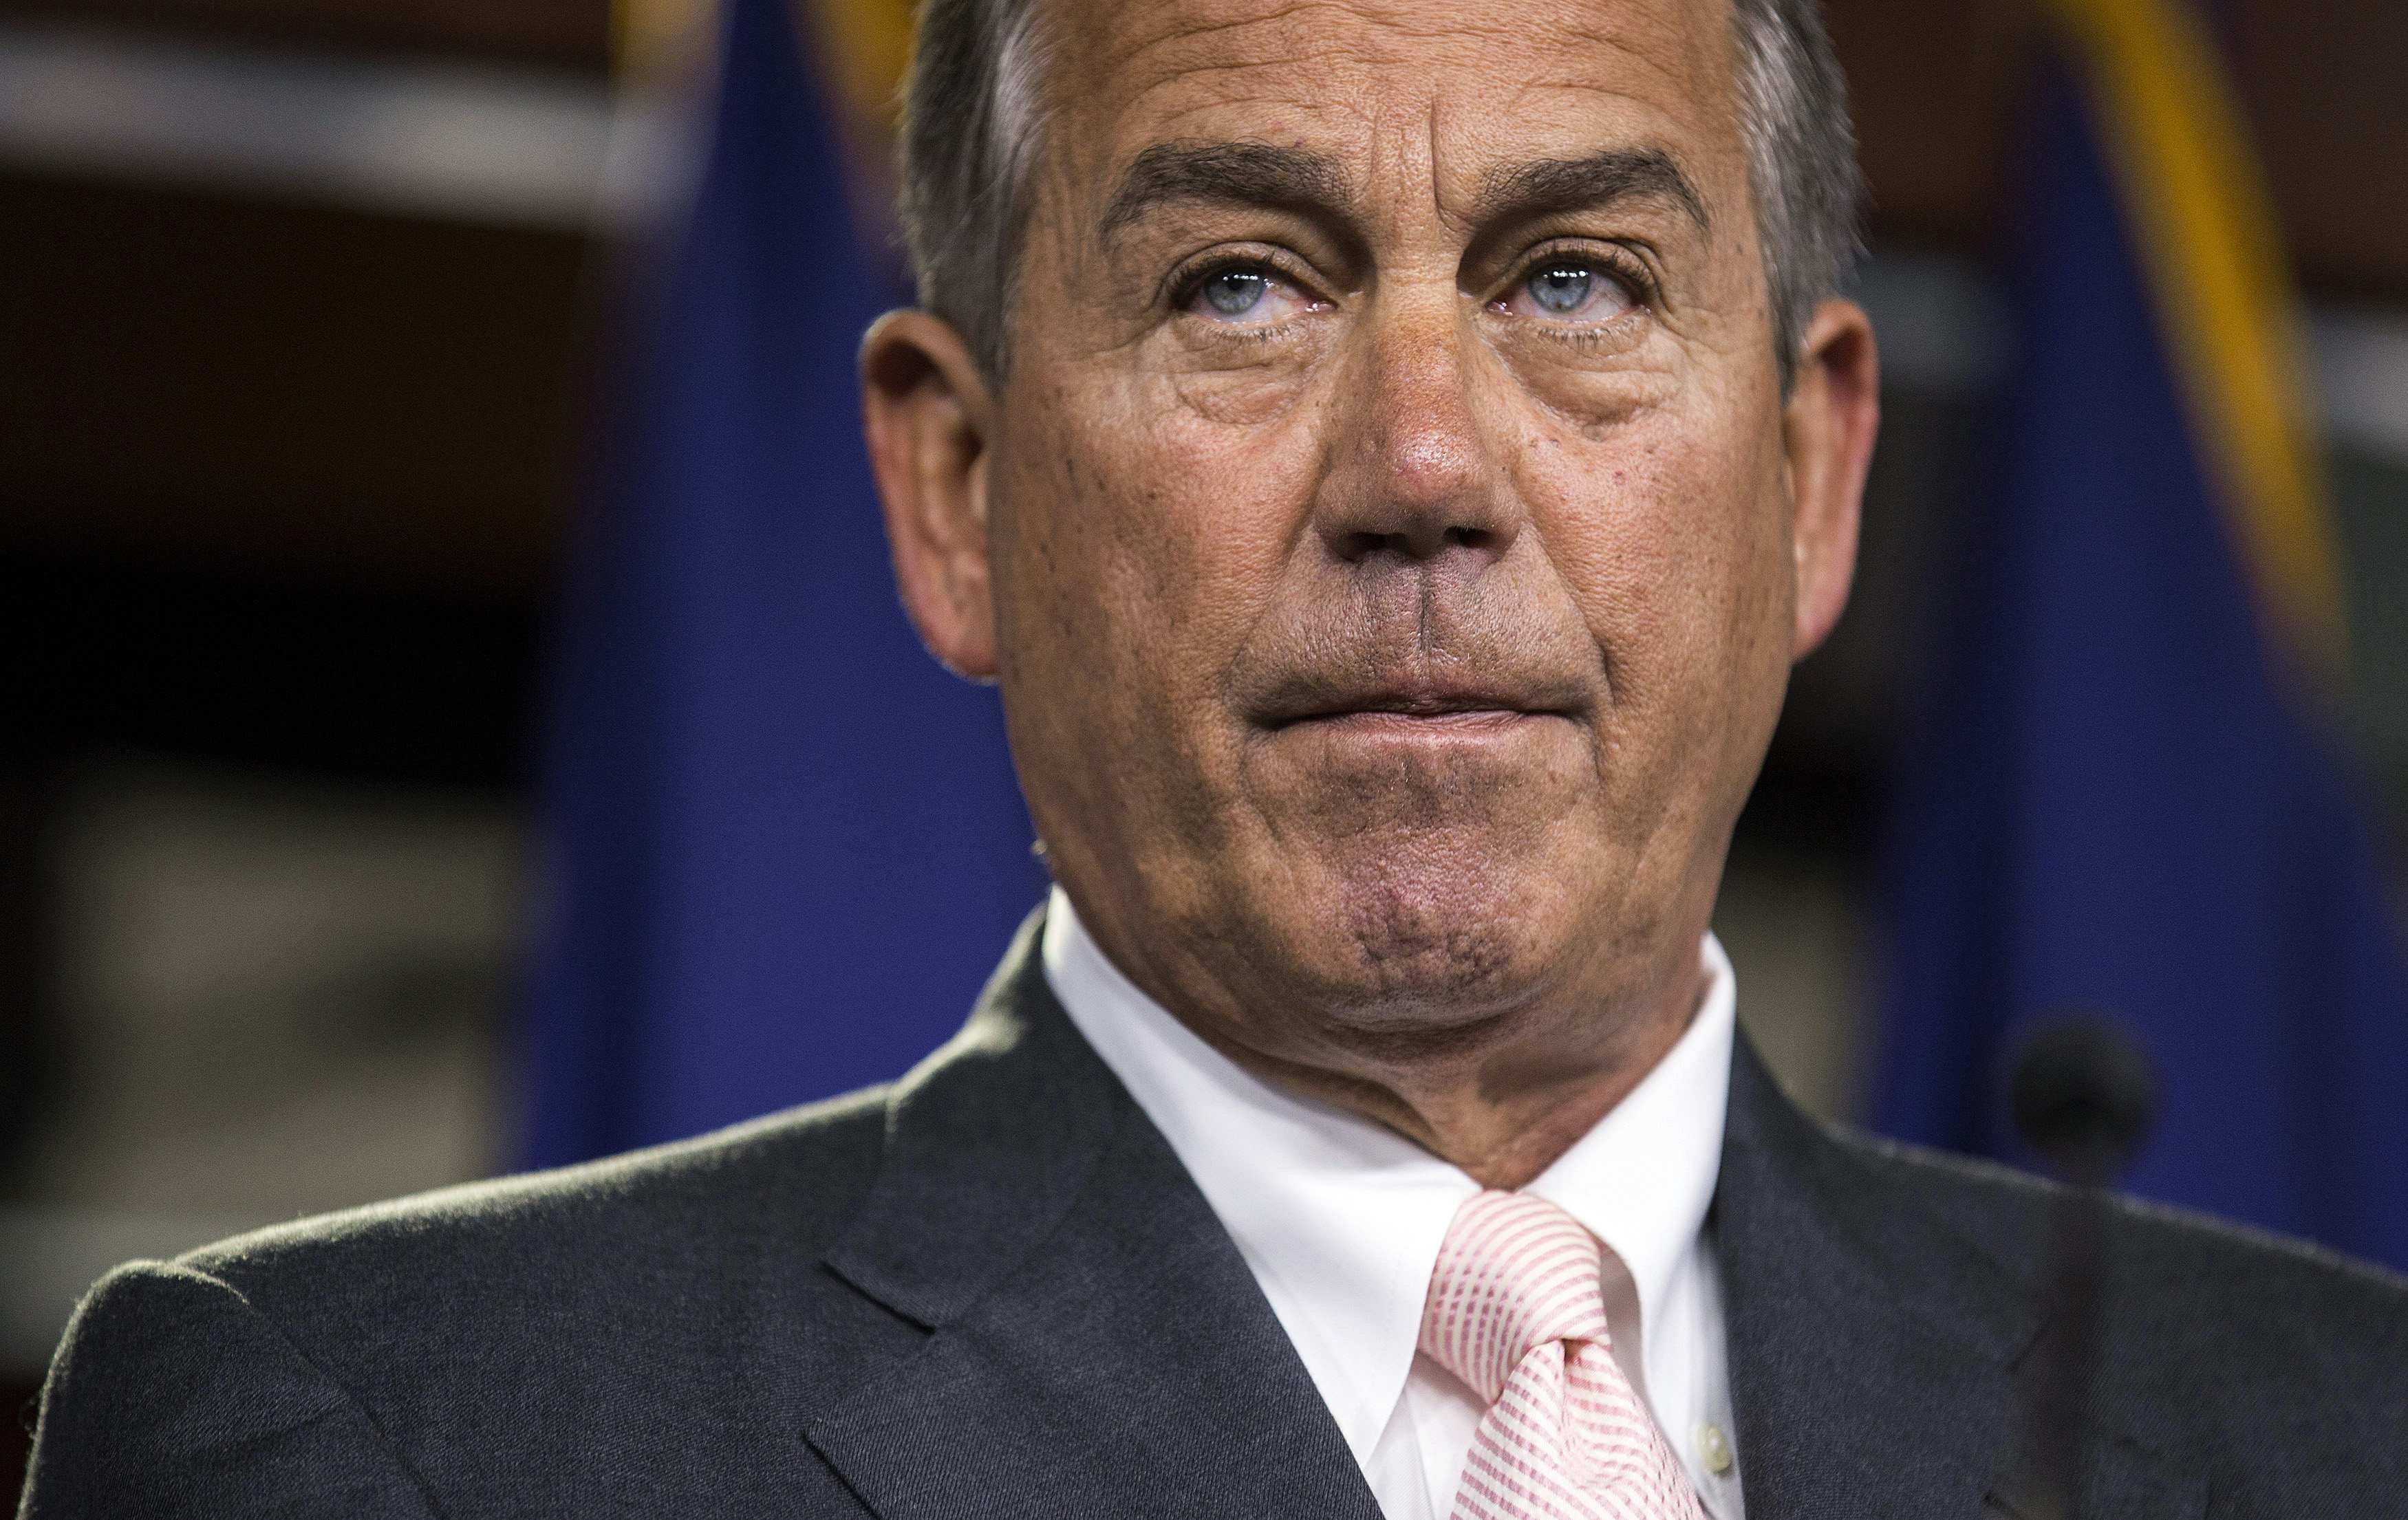 Speaker of the House John Boehner speaks to the media on Capitol Hill in Washington